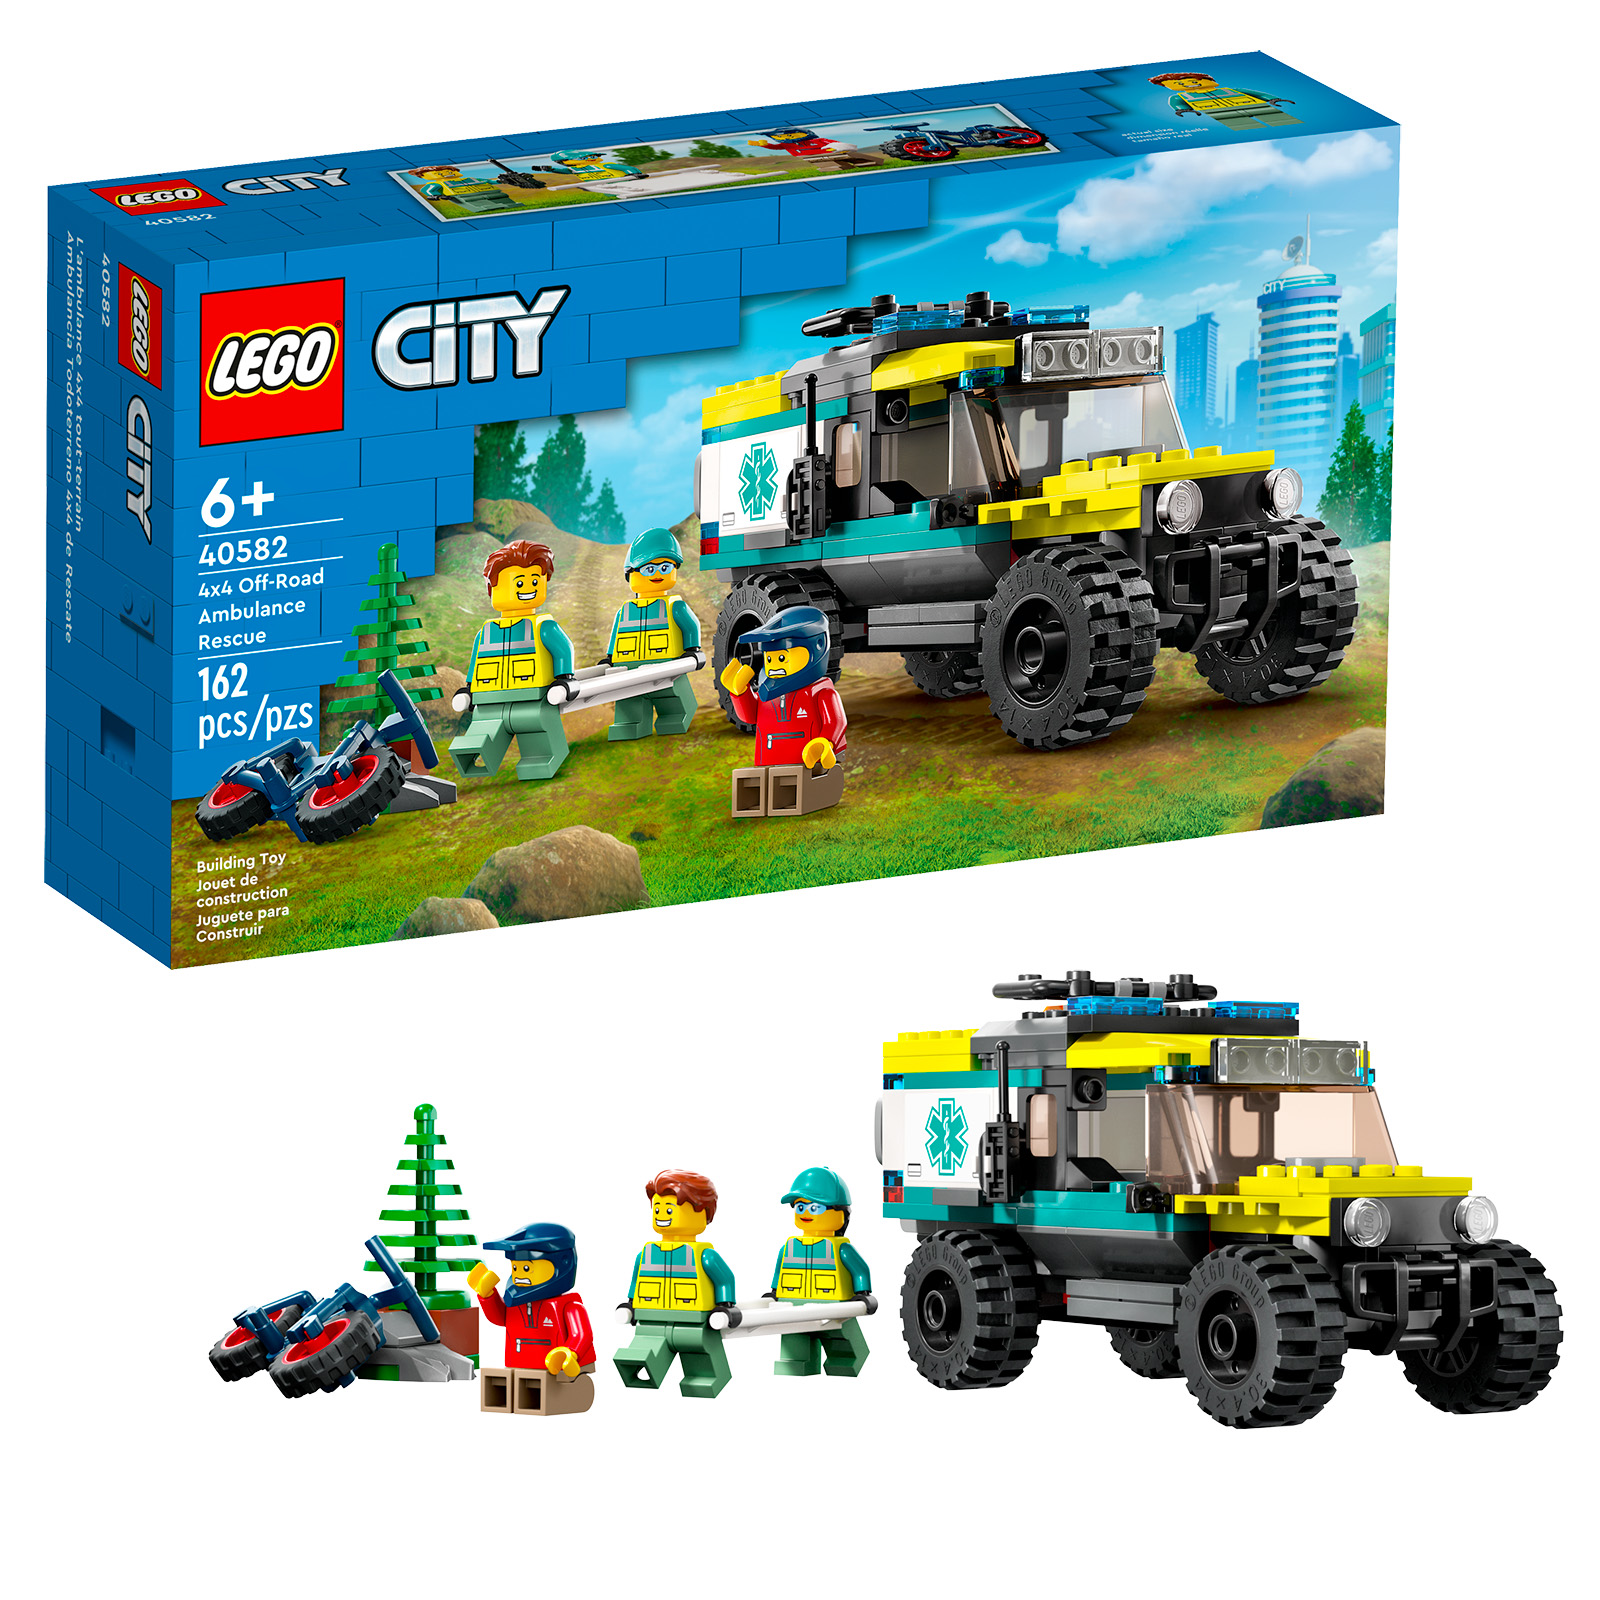 LEGO CITY 40582 4x4 off-road ambulanseredning: det vil endelig være fra 100 € ved kjøp og uten rekkeviddebegrensning